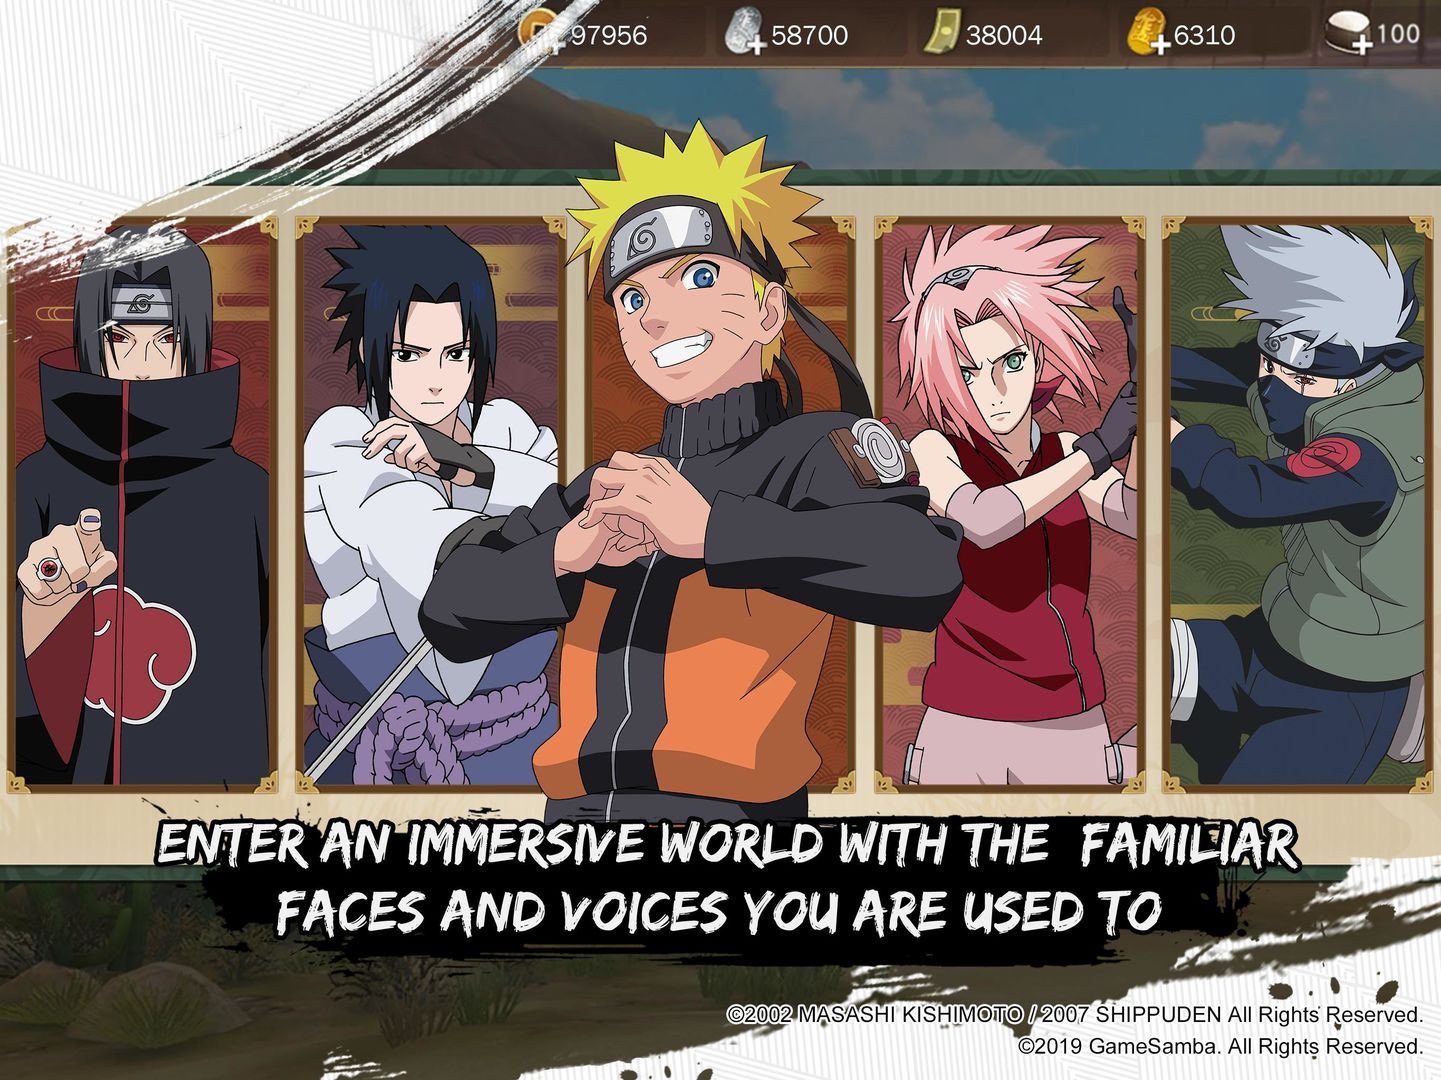 Screenshot of Naruto: Slugfest